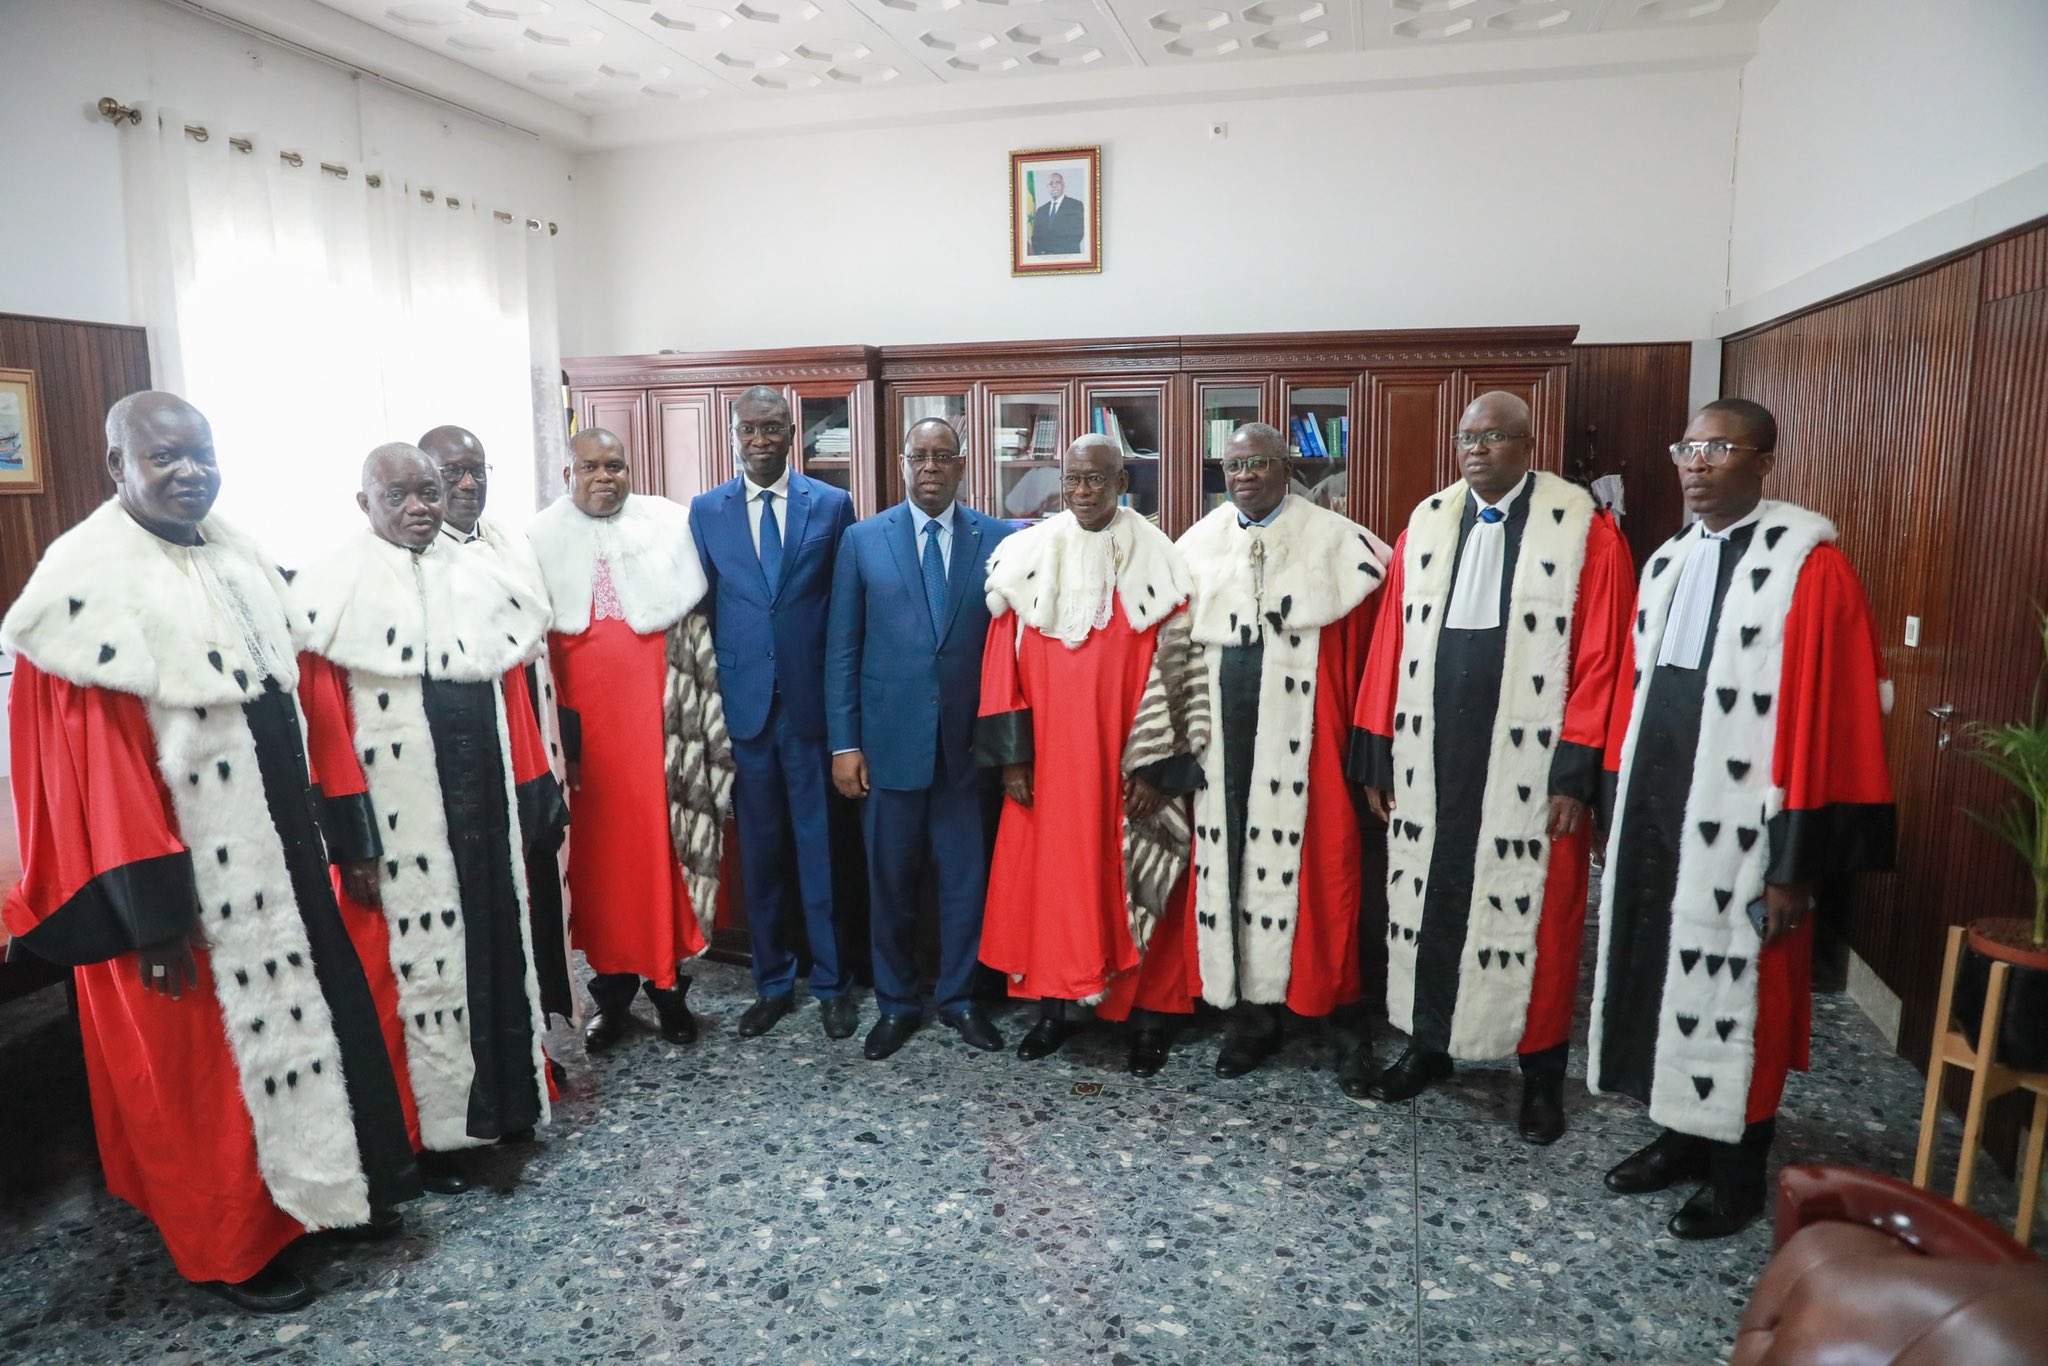 Le Président Macky Sall en compagnie du ministre de la Justice et de hauts magistrats lors de la rentrée solennelle des cours et tribunaux en janvier 2023 à Dakar